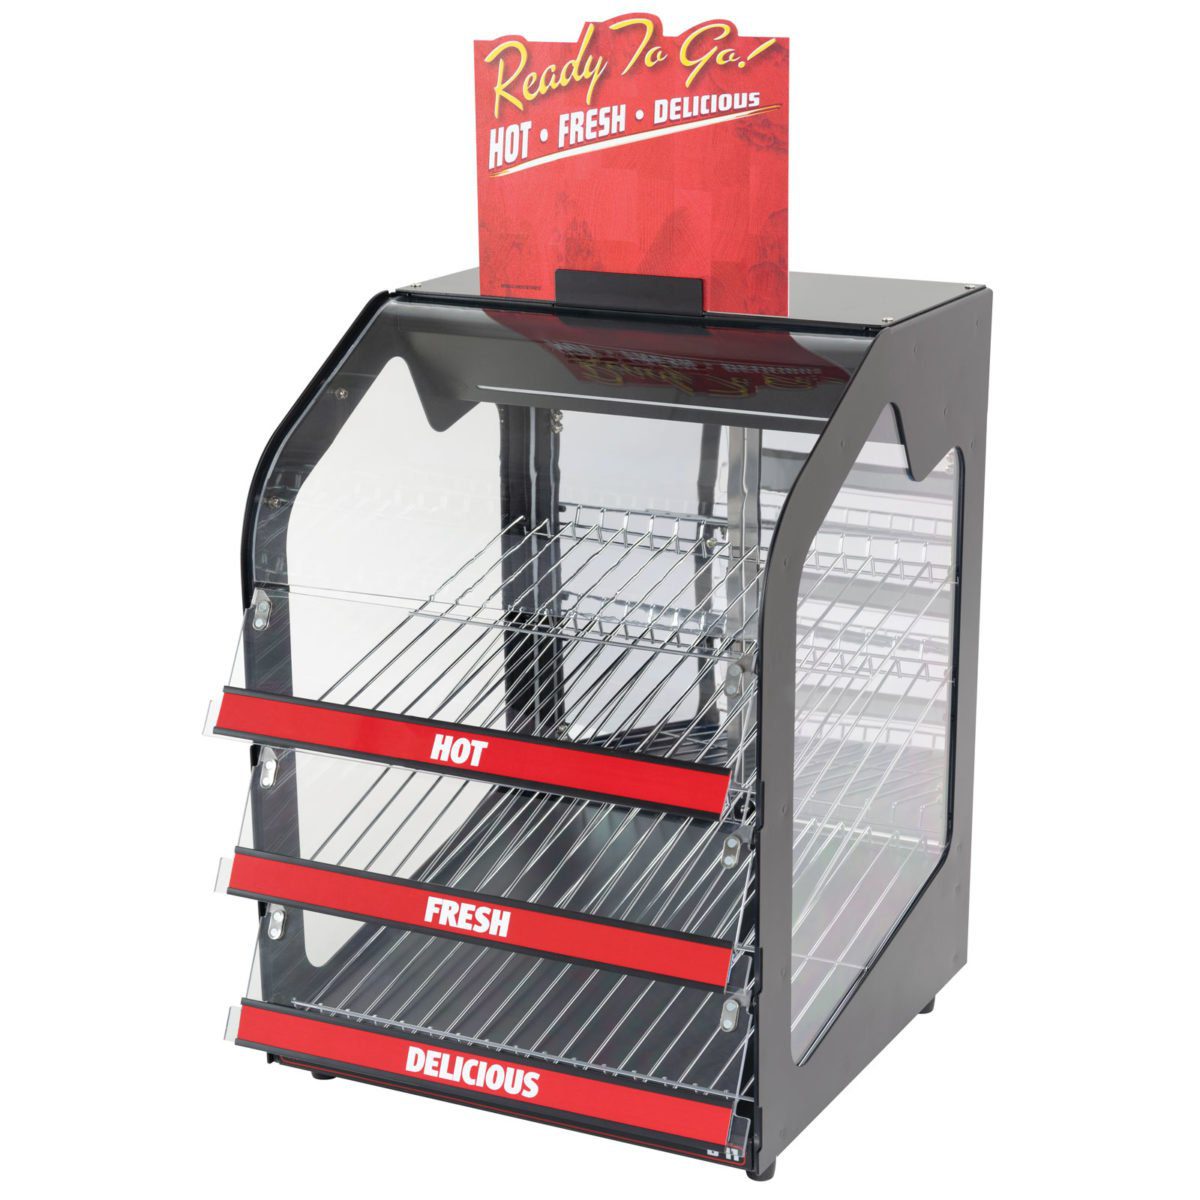 Wisco 891 Countertop Food Warming Merchandiser Cabinet